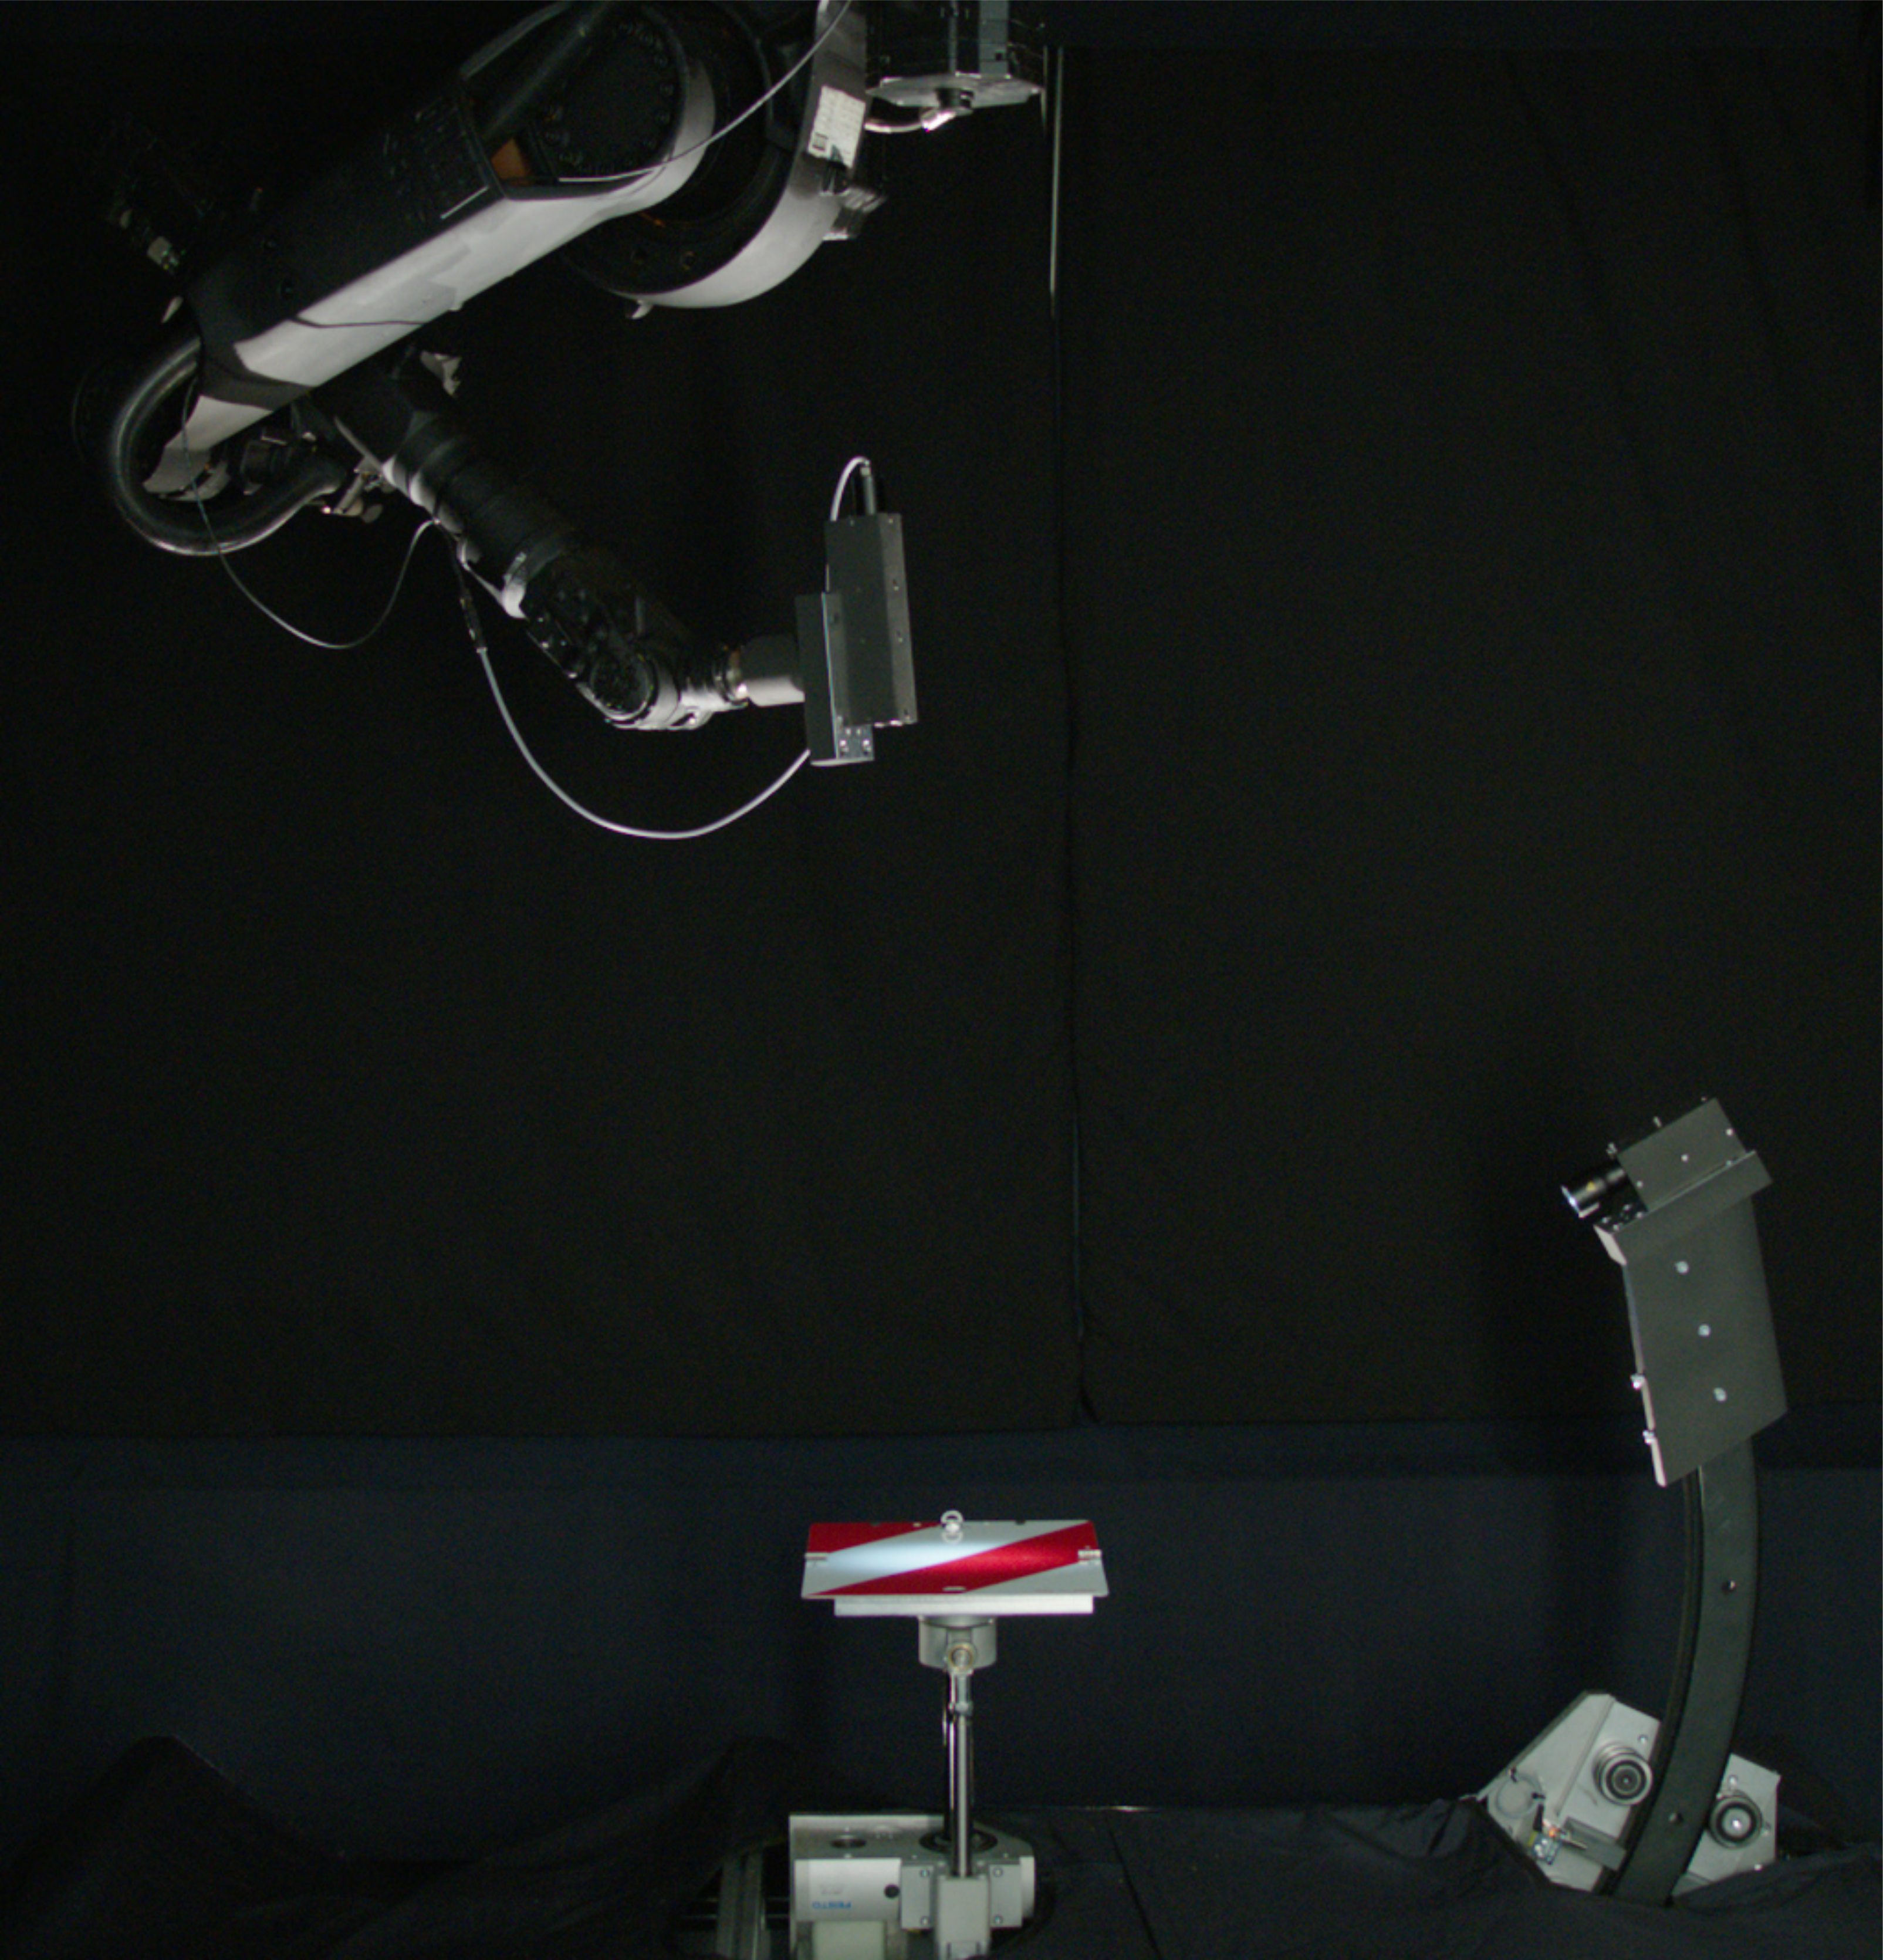 Die Lichtquelle beleuchtet die Messprobe aus verschiedenen Richtungen und ein Roboter bewegt den Detektor halbkugelförmig um die Messprobe herum.